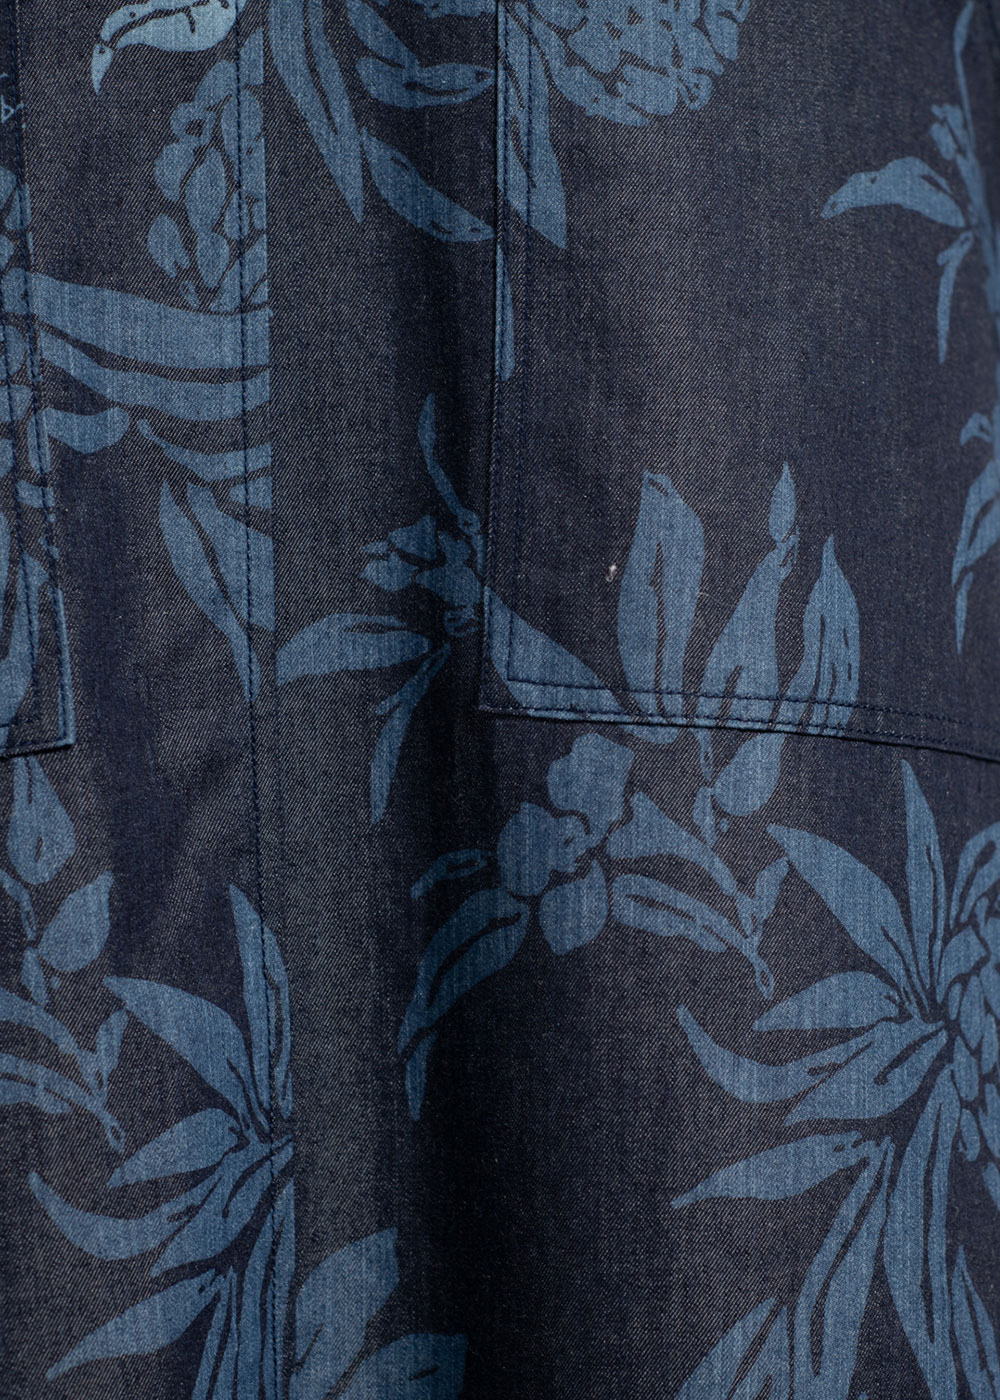 かりゆしウェア（沖縄版アロハシャツ） MAJUN - パインとヤンバルクイナ07’（ジャンパースカート）